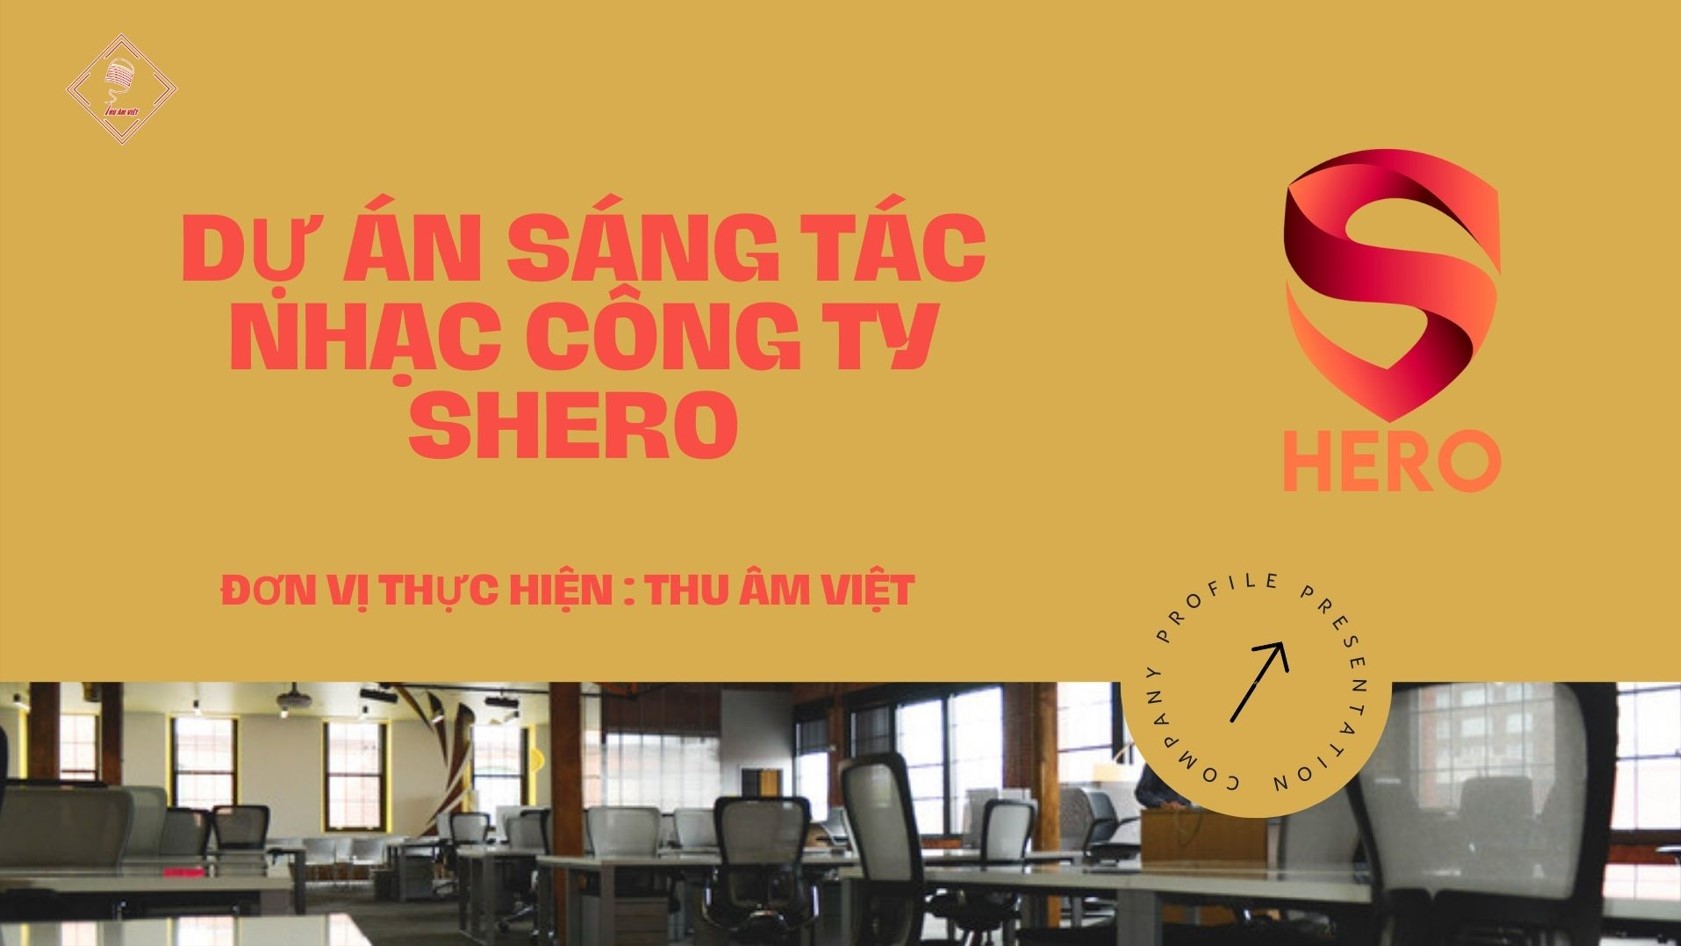 Dự án sáng tác nhạc công ty SHERO - Đơn vị sản xuất Thu  m Việt